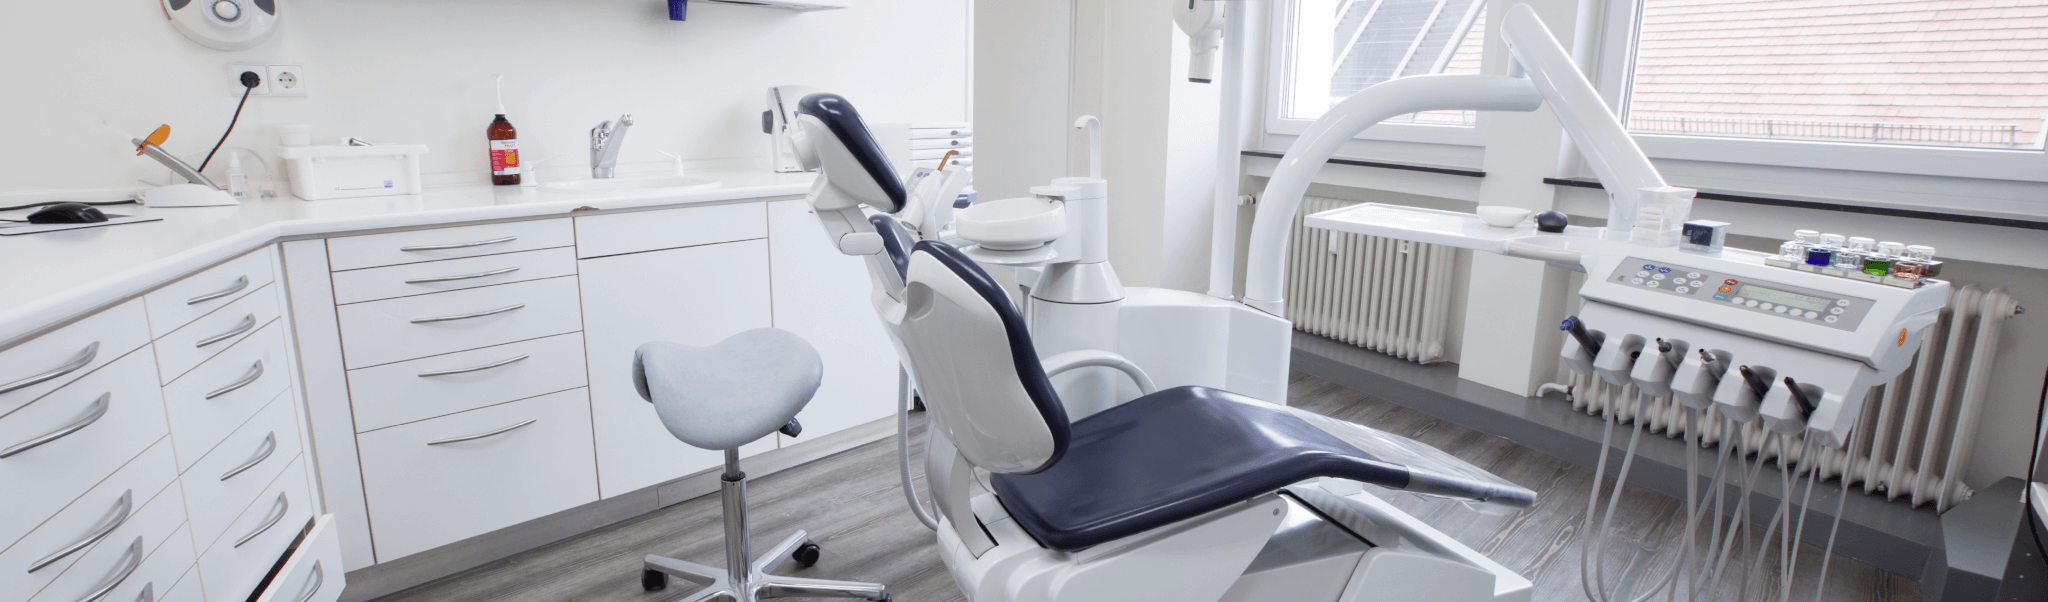 Schienentherapie - Behandlungsraum der Zahnärzte Sindelfingen mit grauem Stuhl